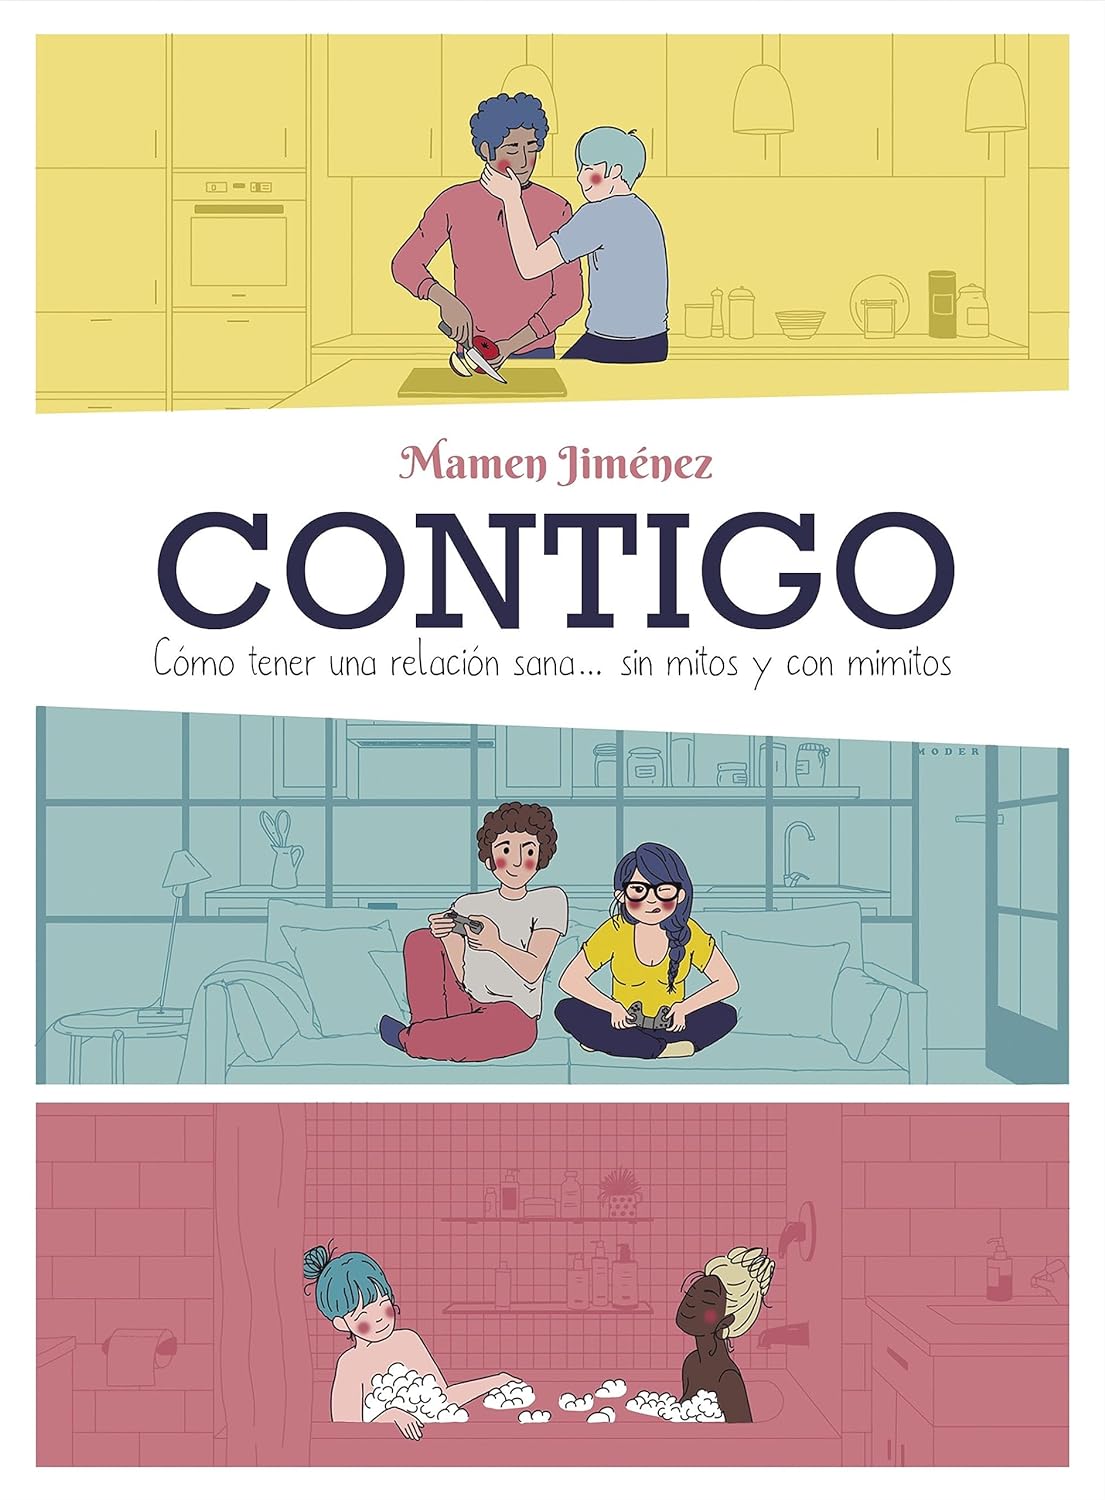 Portada del libro Contigo, de Mamen Jiménez. En ella se ven, dibujadas, varias parejas (una de dos chicos, otra de dos chicas y una pareja compuesta por chica y chico en el centro).